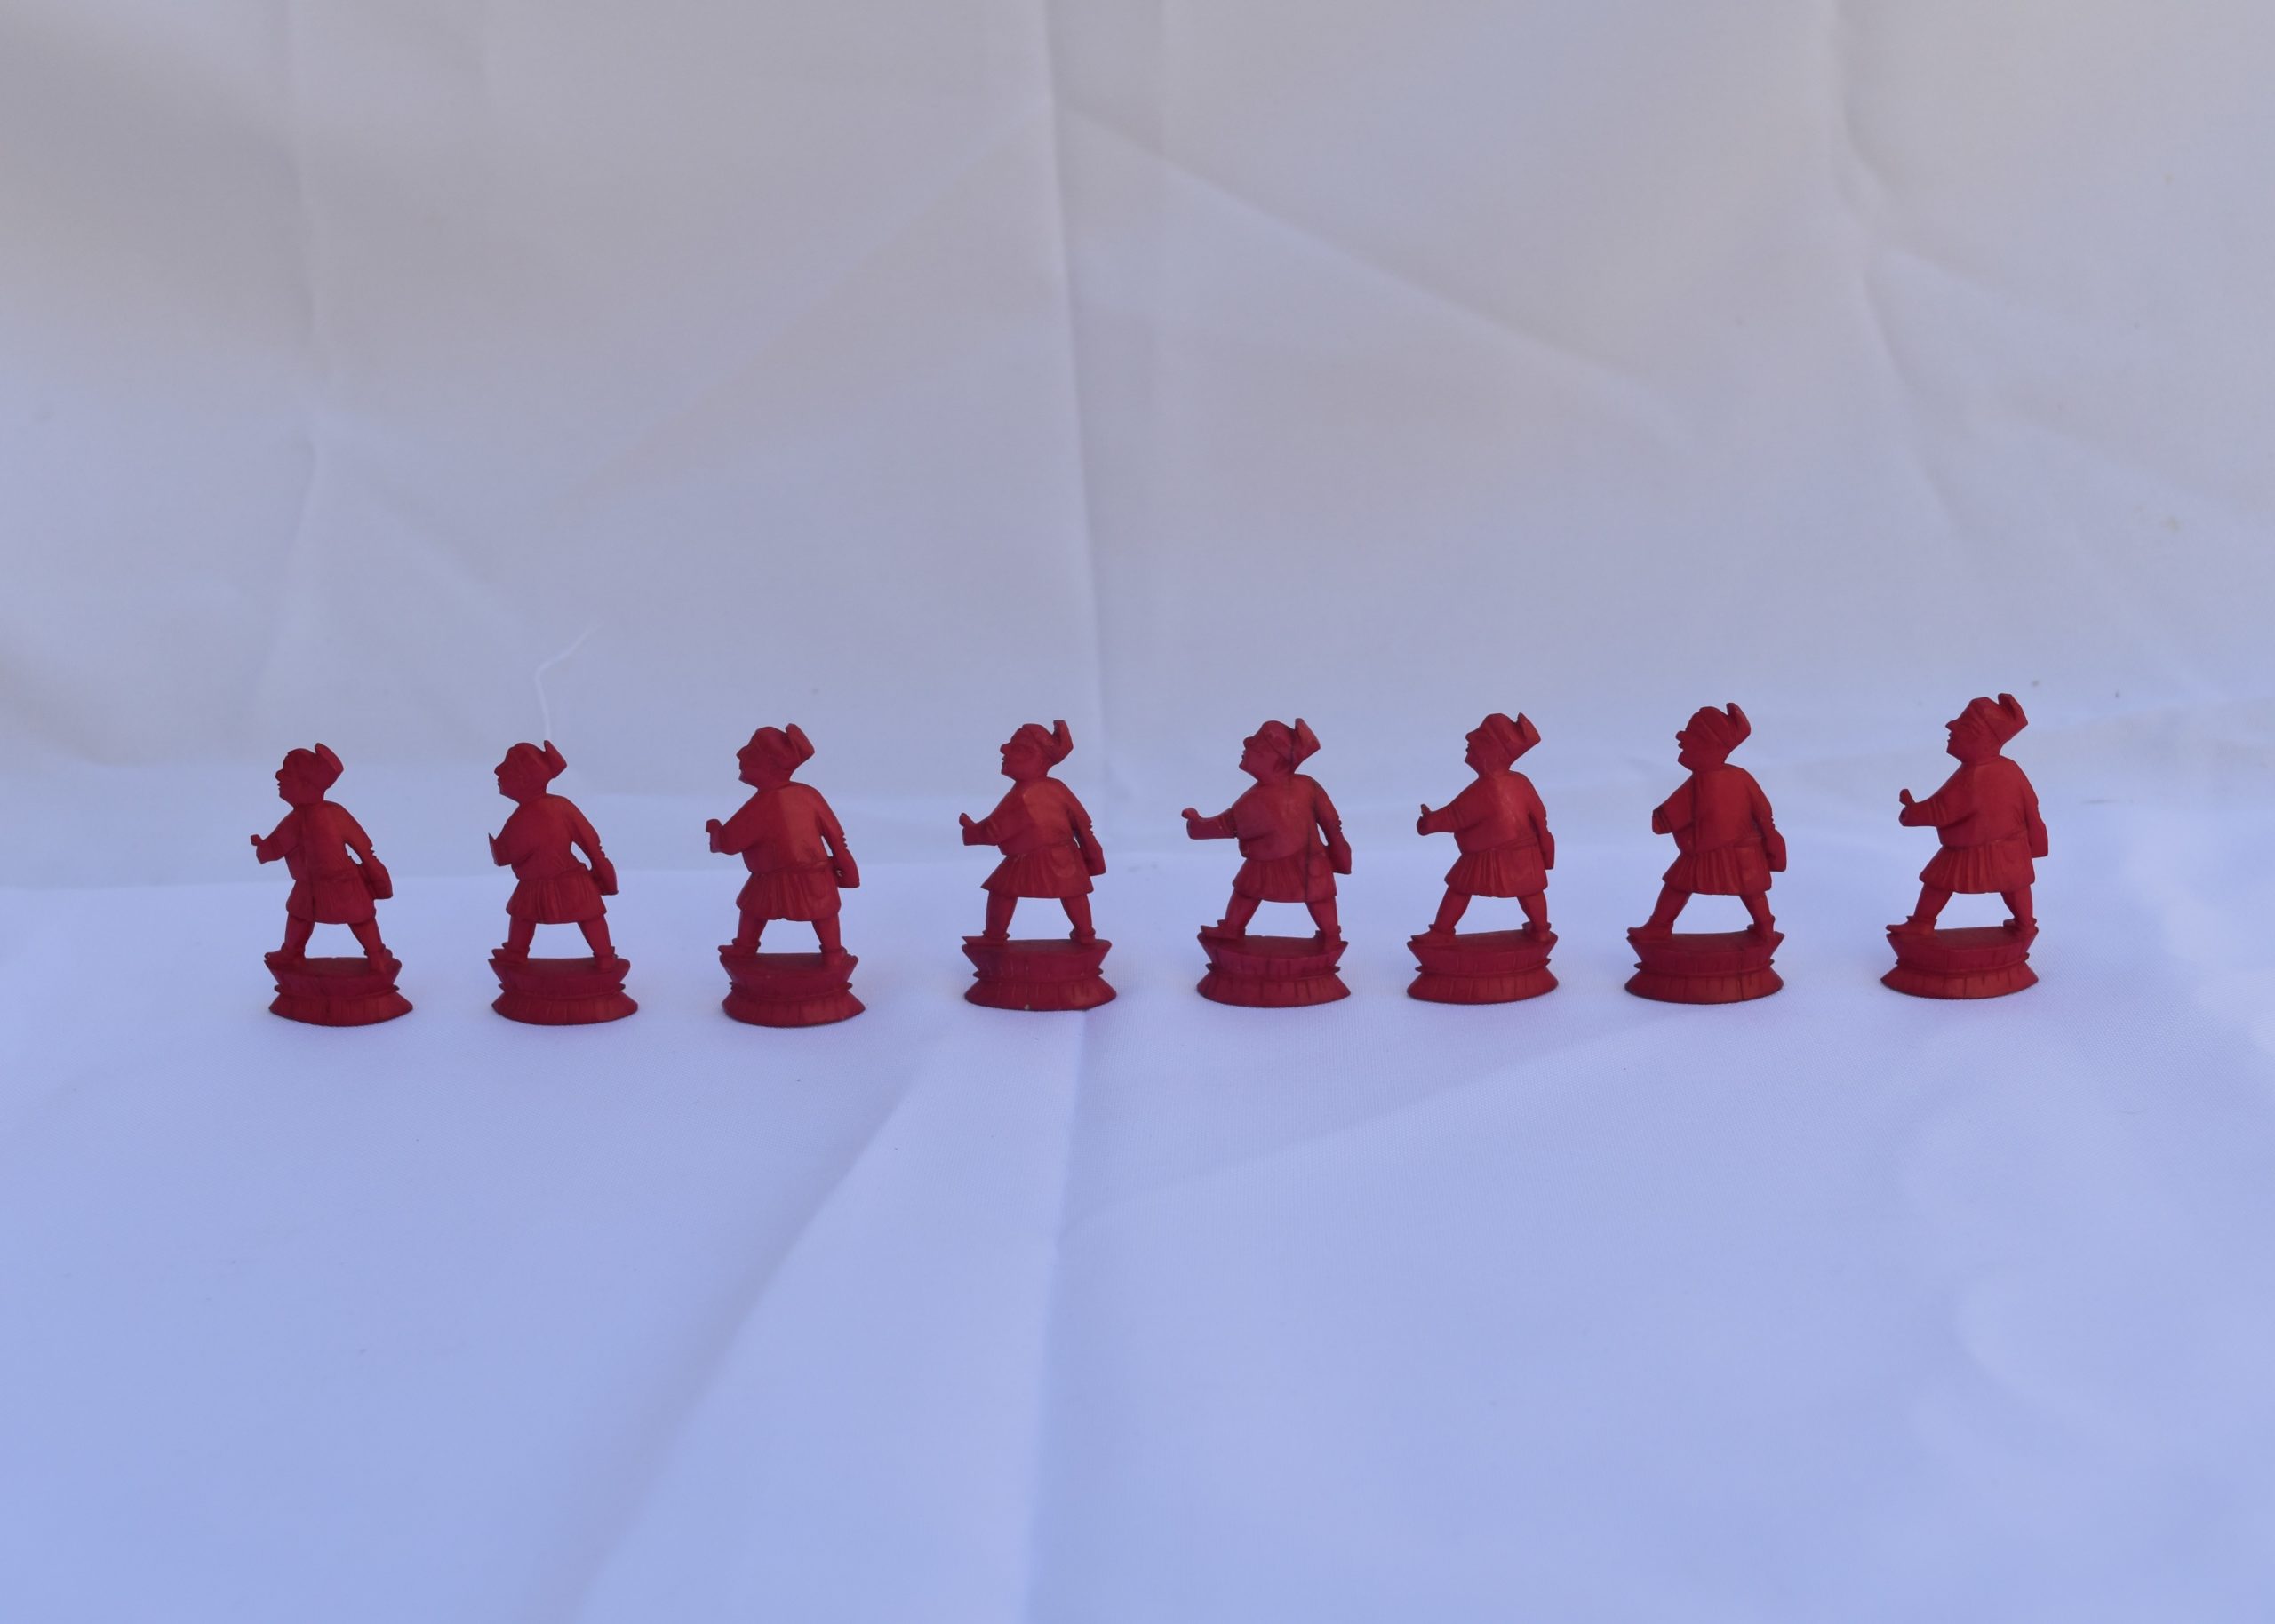 Conjunto de Jogo em Xadrez – Acervo